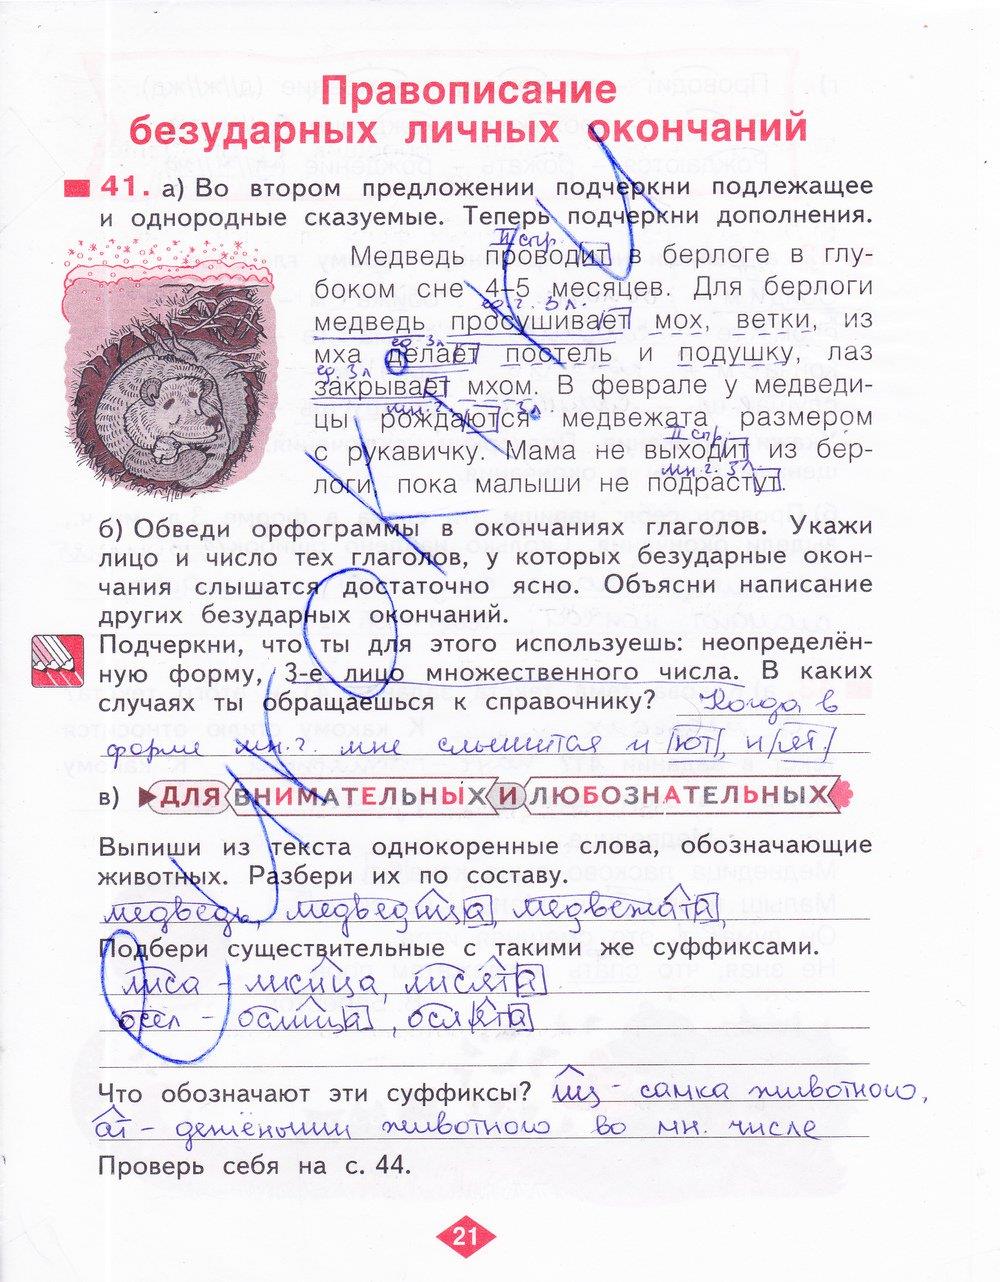 гдз 4 класс рабочая тетрадь часть 3 страница 21 русский язык Нечаева, Воскресенская